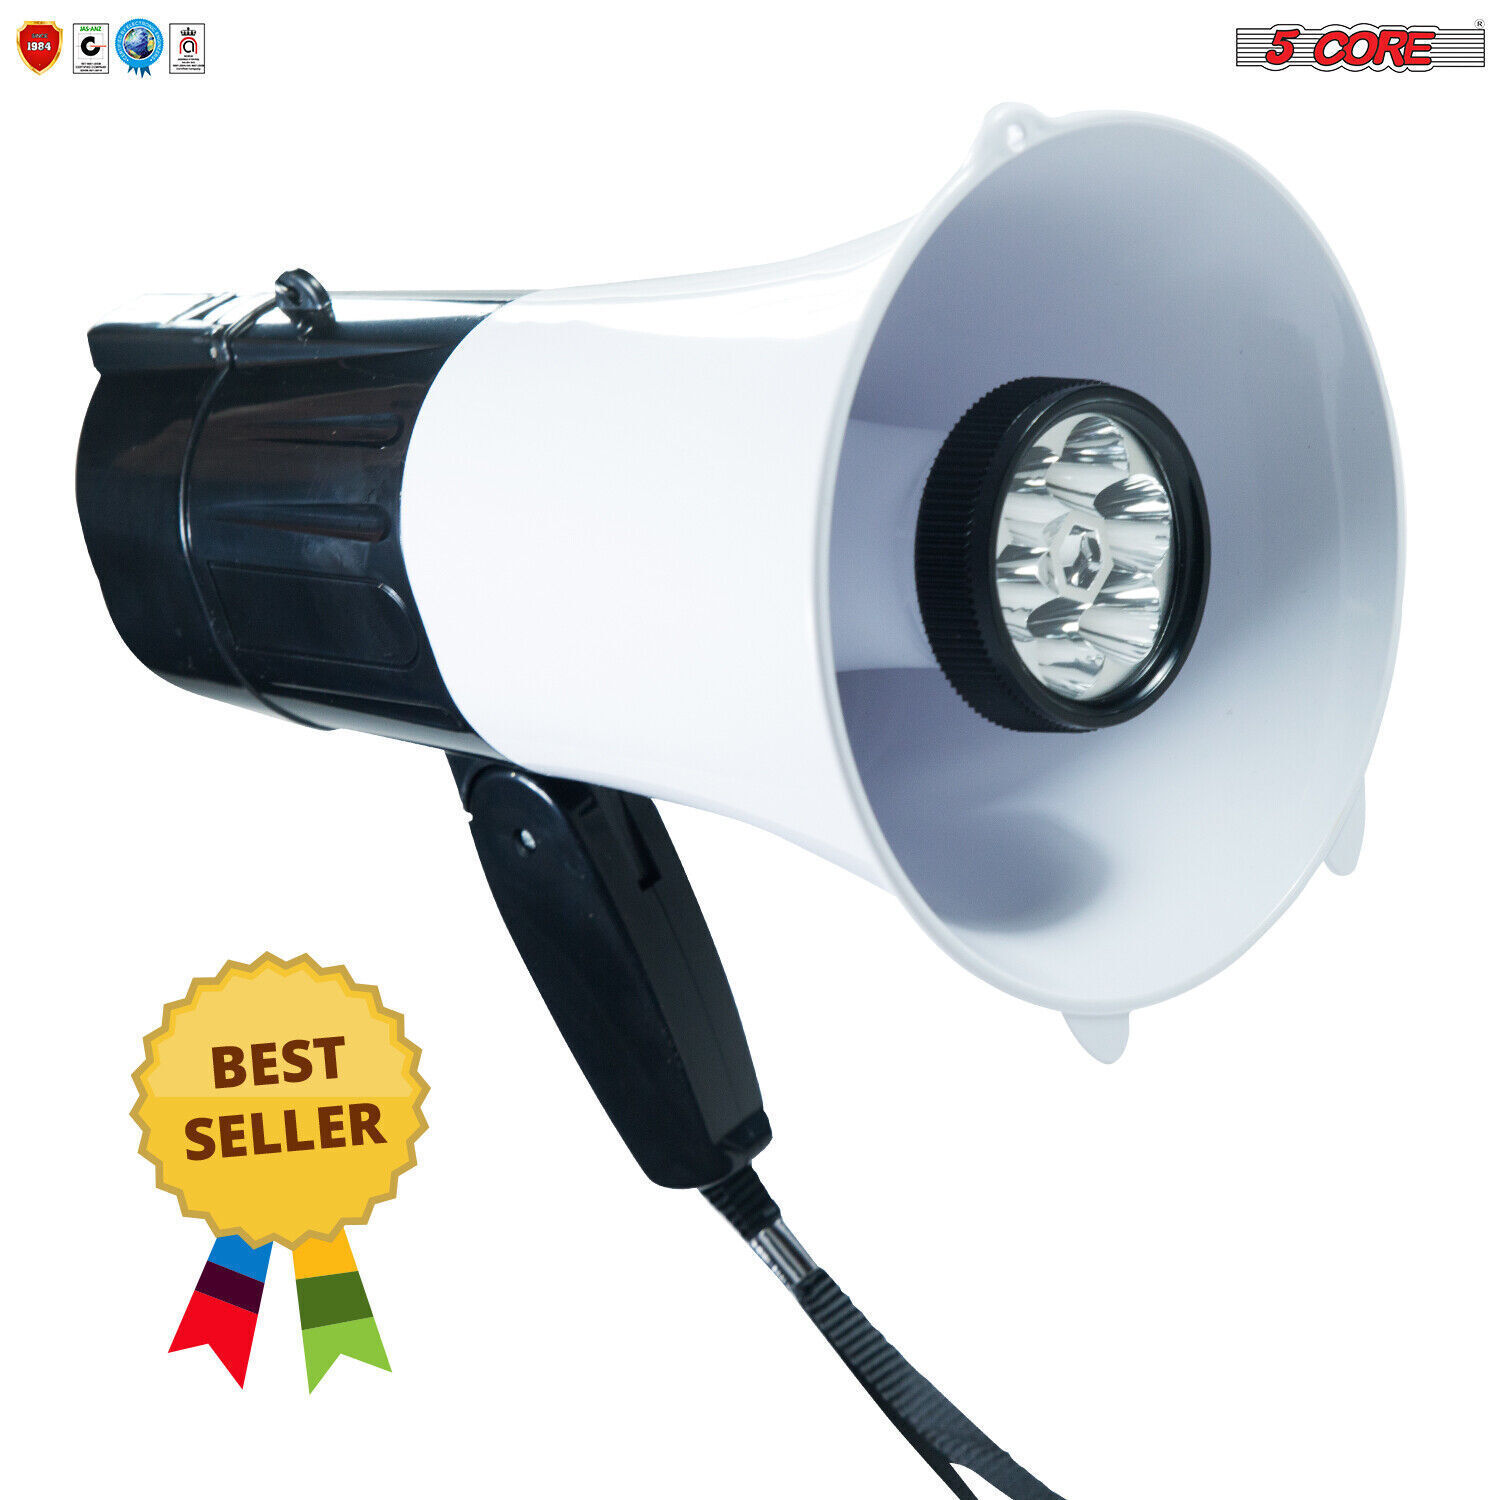 Primary image for Megaphone Handheld with LED lights Bullhorn Cheer Loudspeaker Bull Horn Speaker